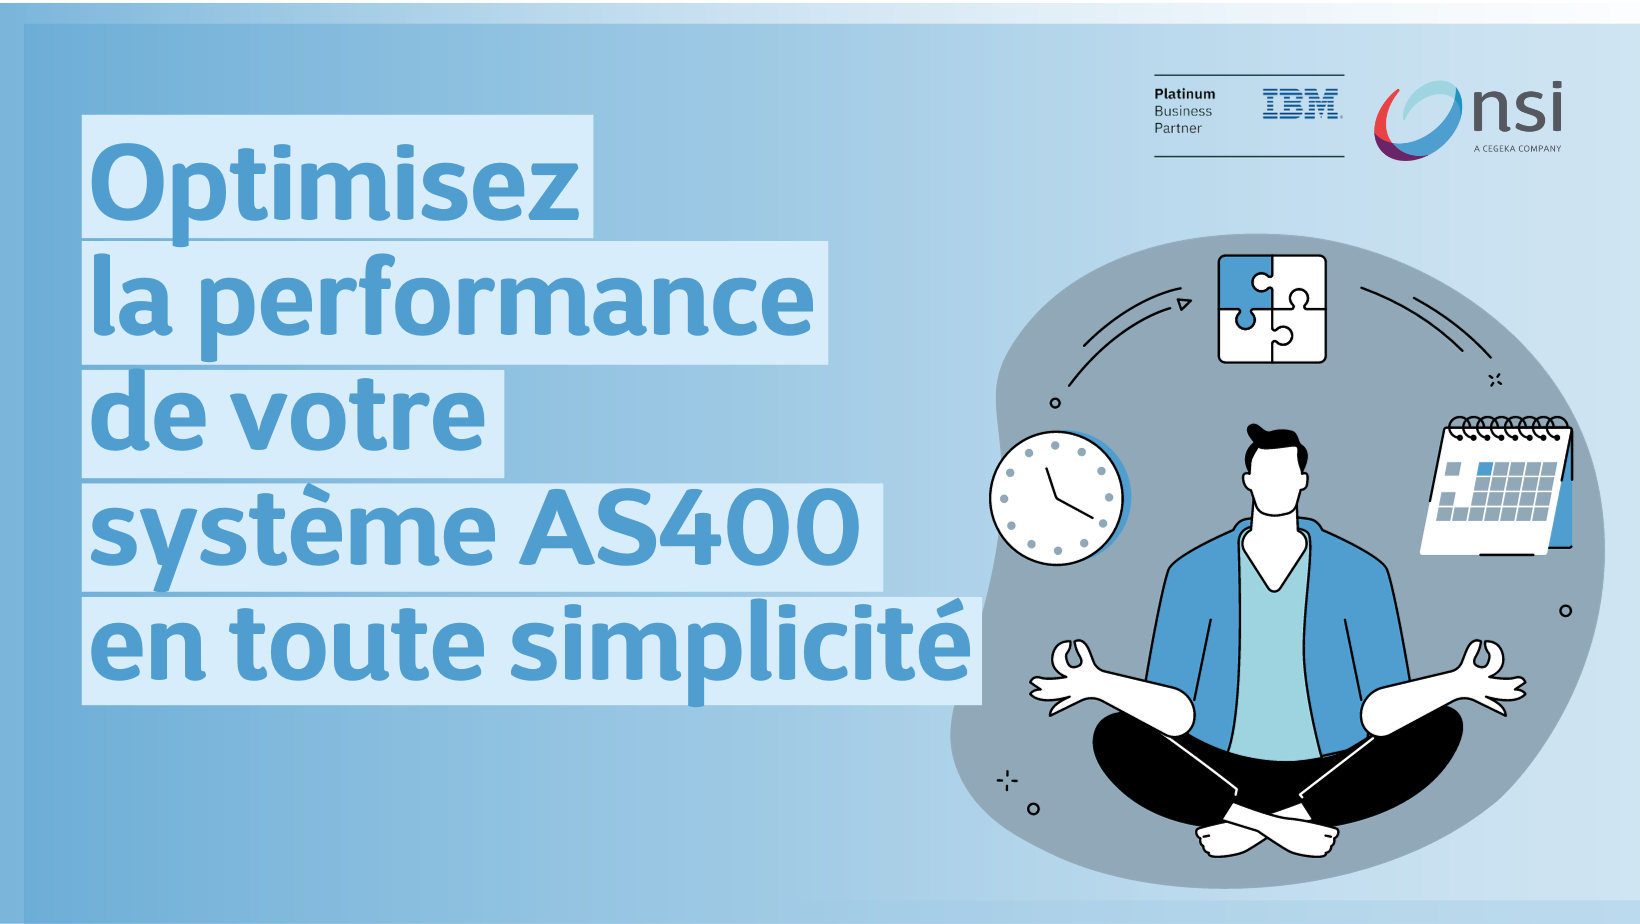 Optimisez la performance de votre système AS400 en toute simplicité